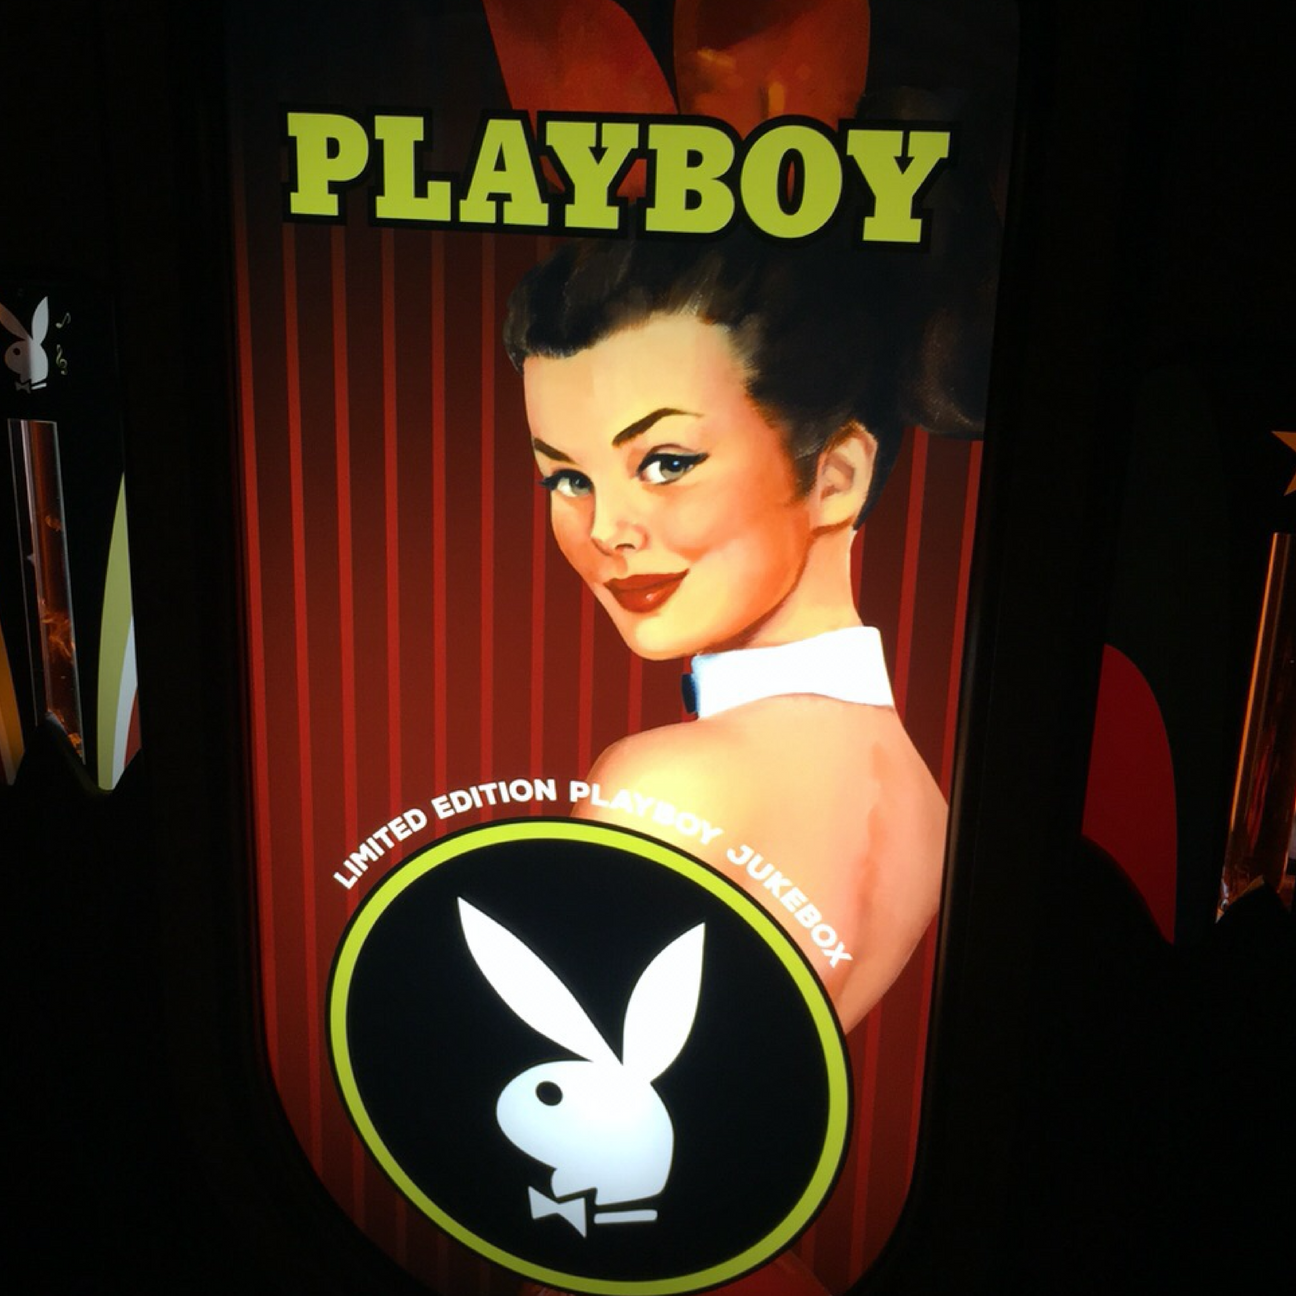 Limited Edition Rock-Ola Playboy Vinyl 45 Bubbler Jukebox